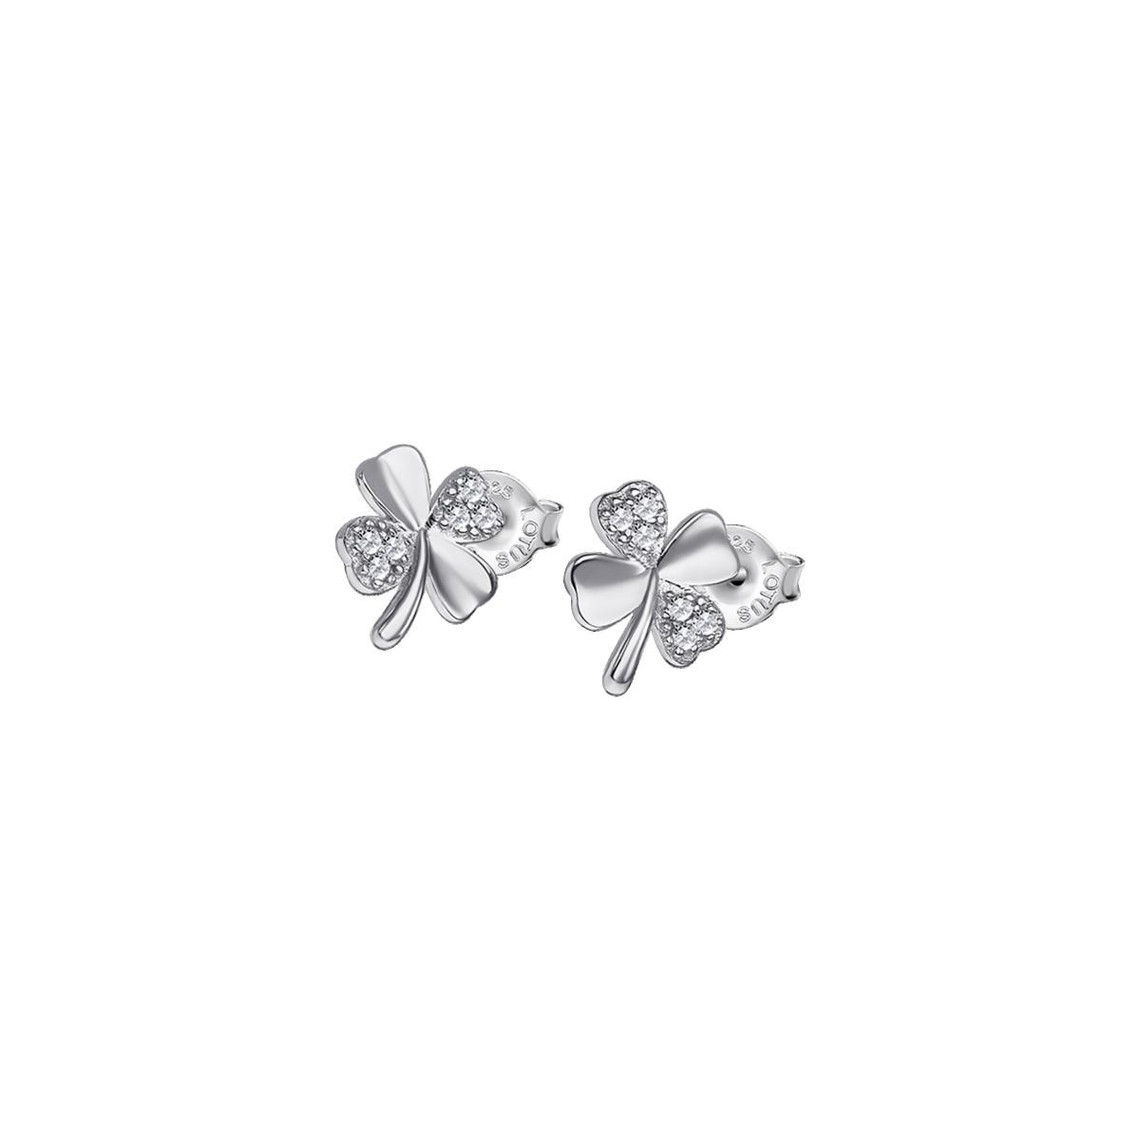 boucles d'oreilles femme lotus silver - lp3108-4-1 argent